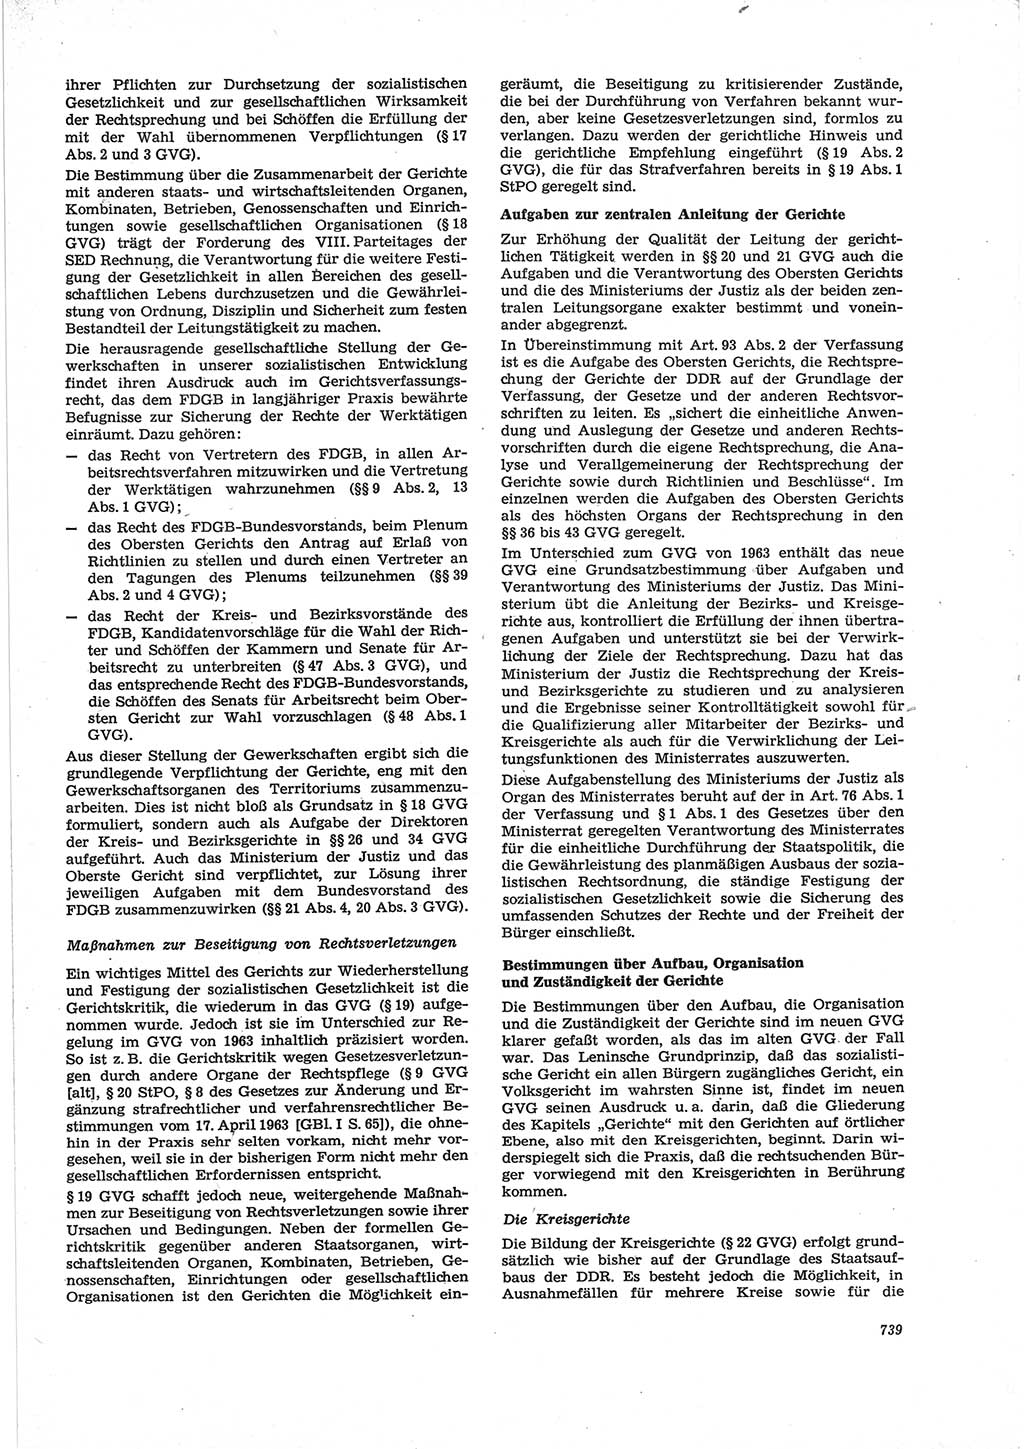 Neue Justiz (NJ), Zeitschrift für Recht und Rechtswissenschaft [Deutsche Demokratische Republik (DDR)], 28. Jahrgang 1974, Seite 739 (NJ DDR 1974, S. 739)